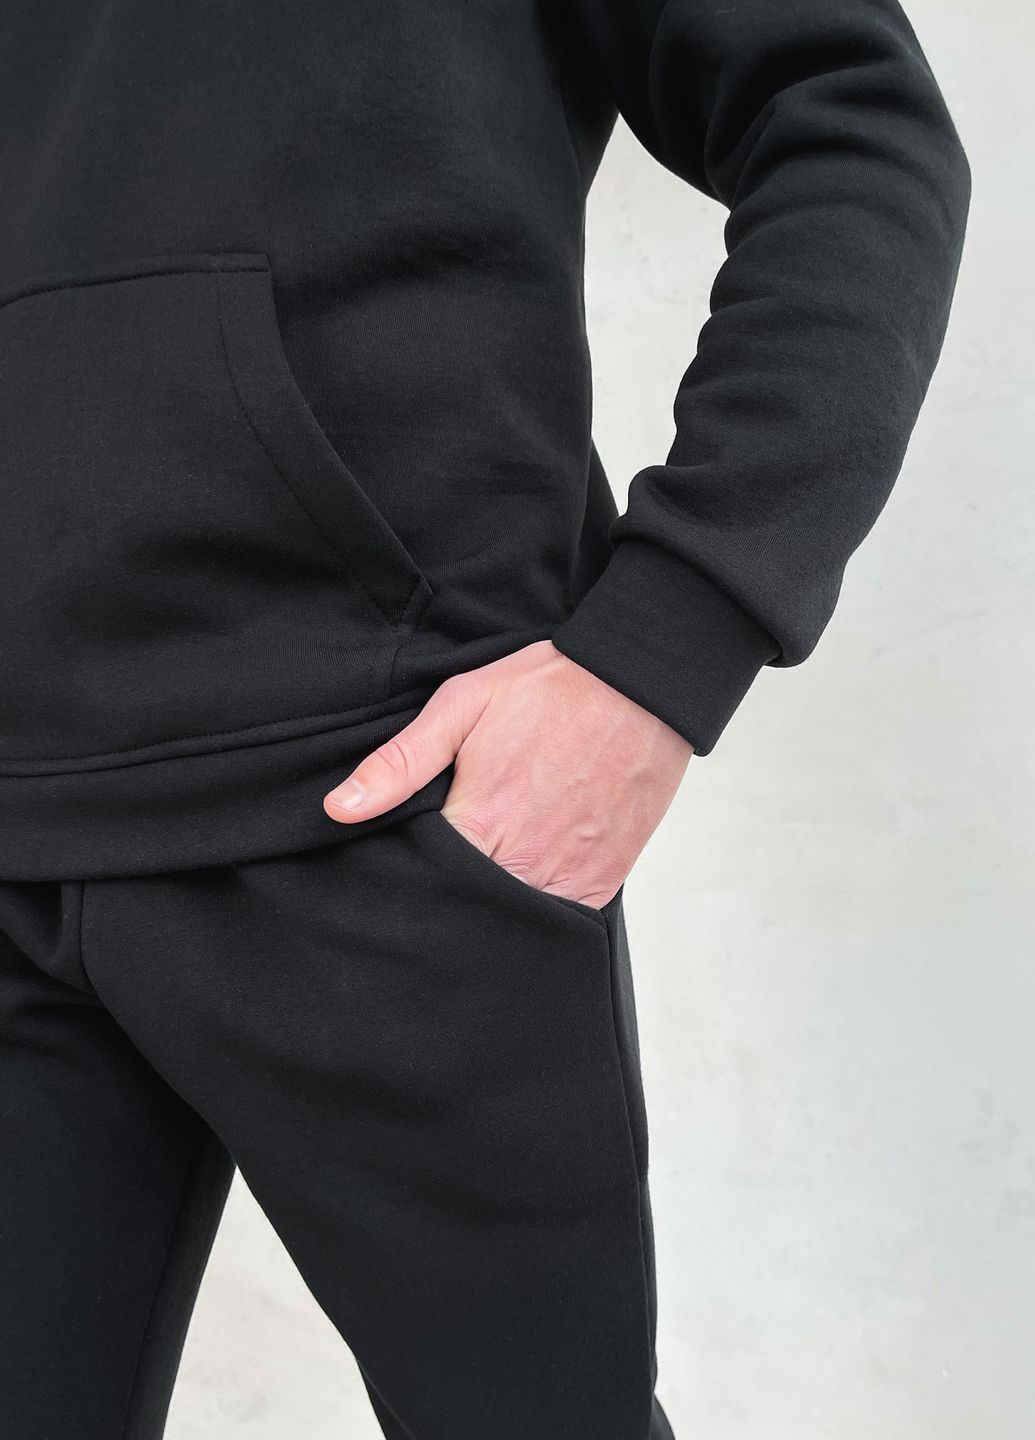 Купить Теплый мужской спортивный костюм на флисе черного цвета Merlini Виско 100000208, размер 42-44 в интернет-магазине